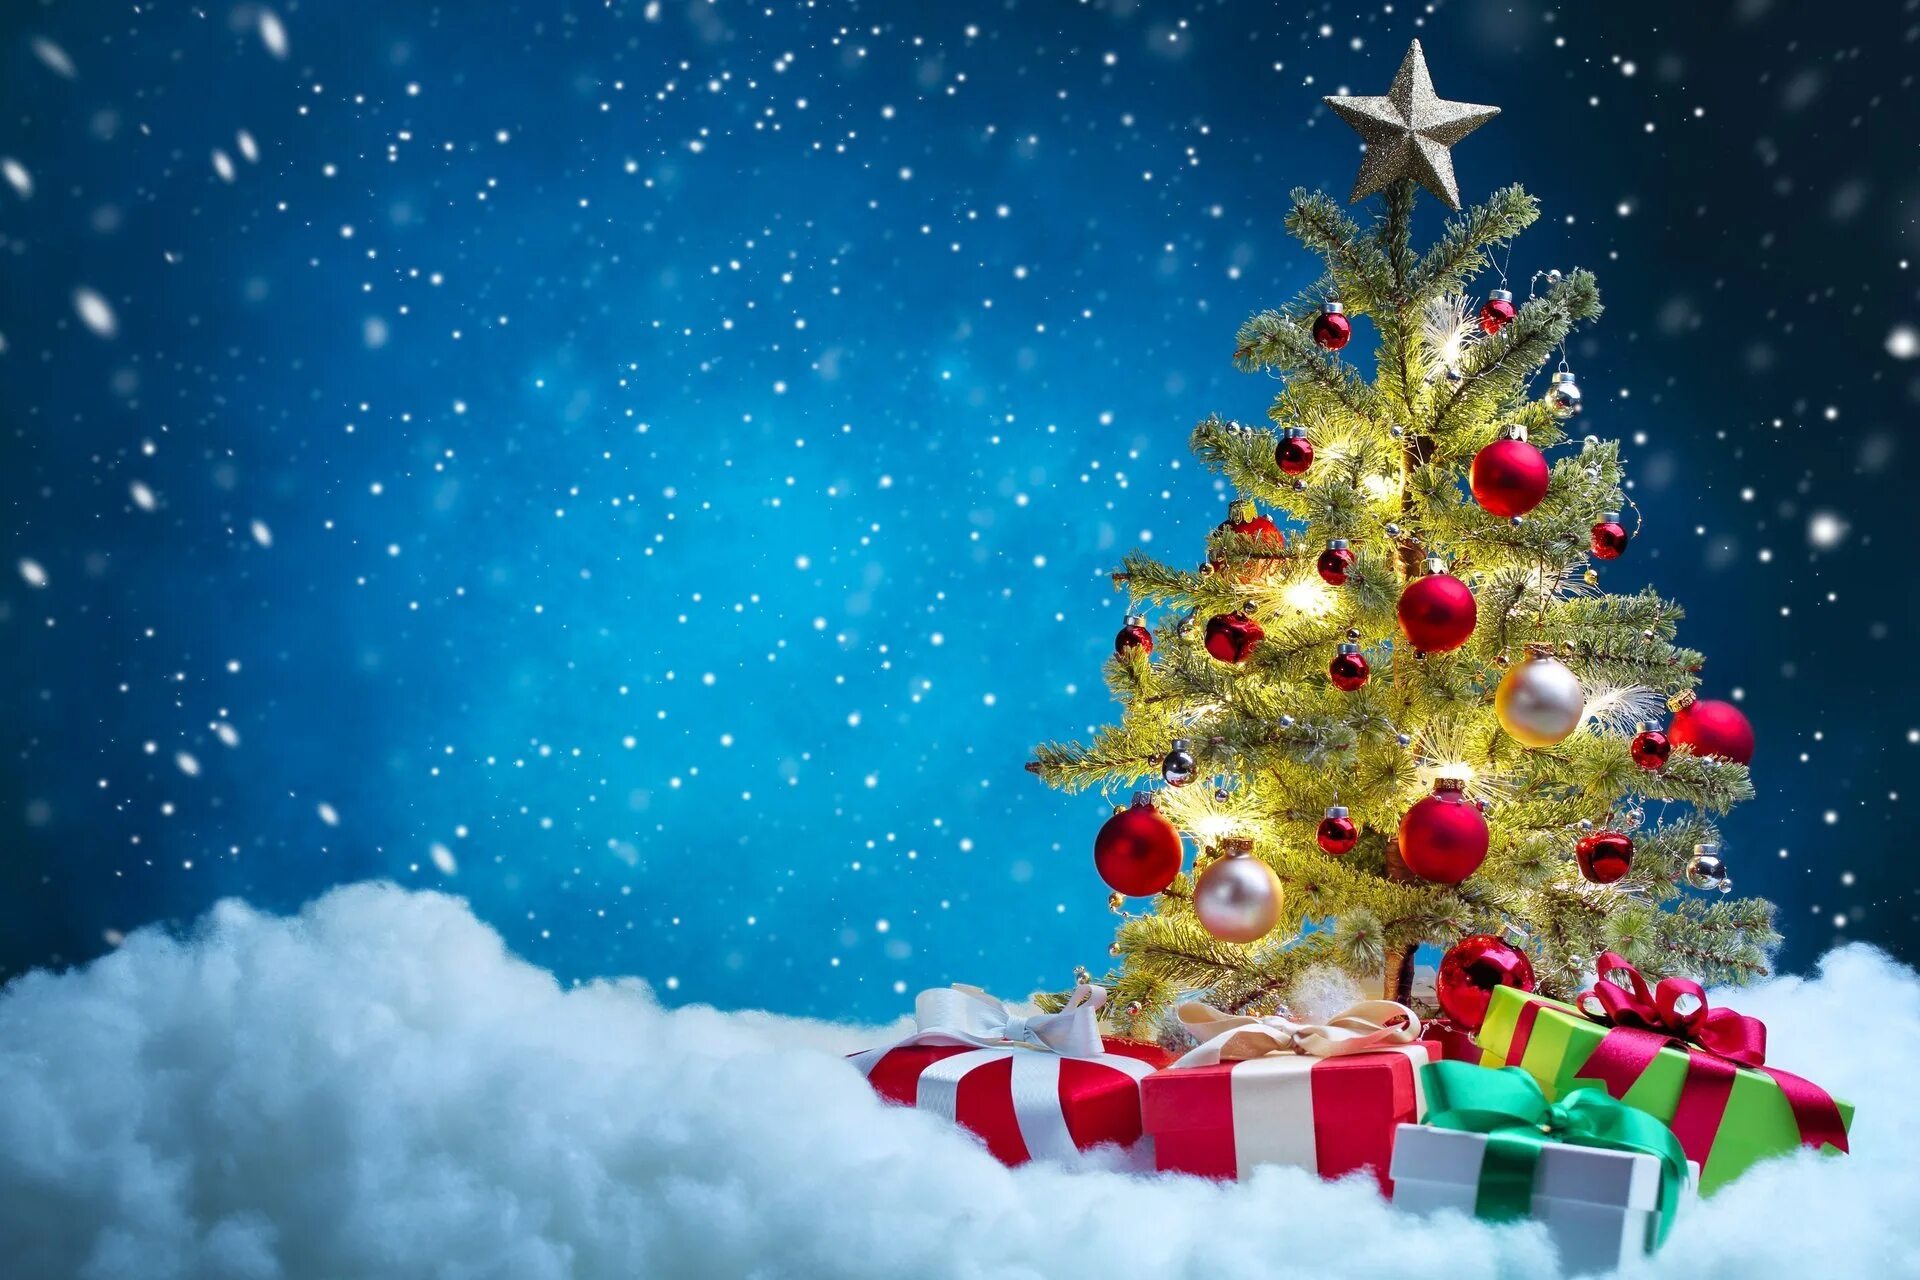 Новогодняя елка. Подарки для елки. Новогодняя елка с подарками. С новым годом и Рождеств. 2019 год назначен годом